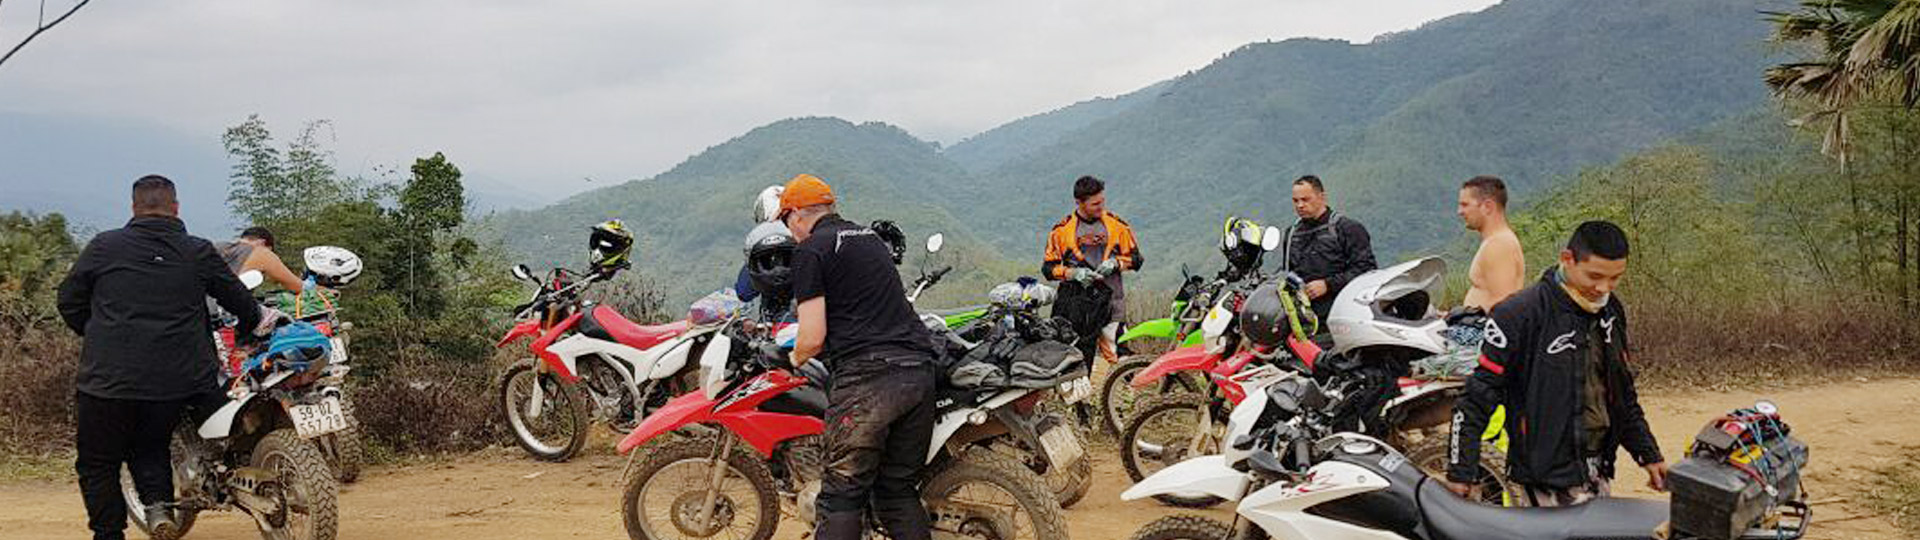 4 days Yangon Motorbike Tour To Bagan